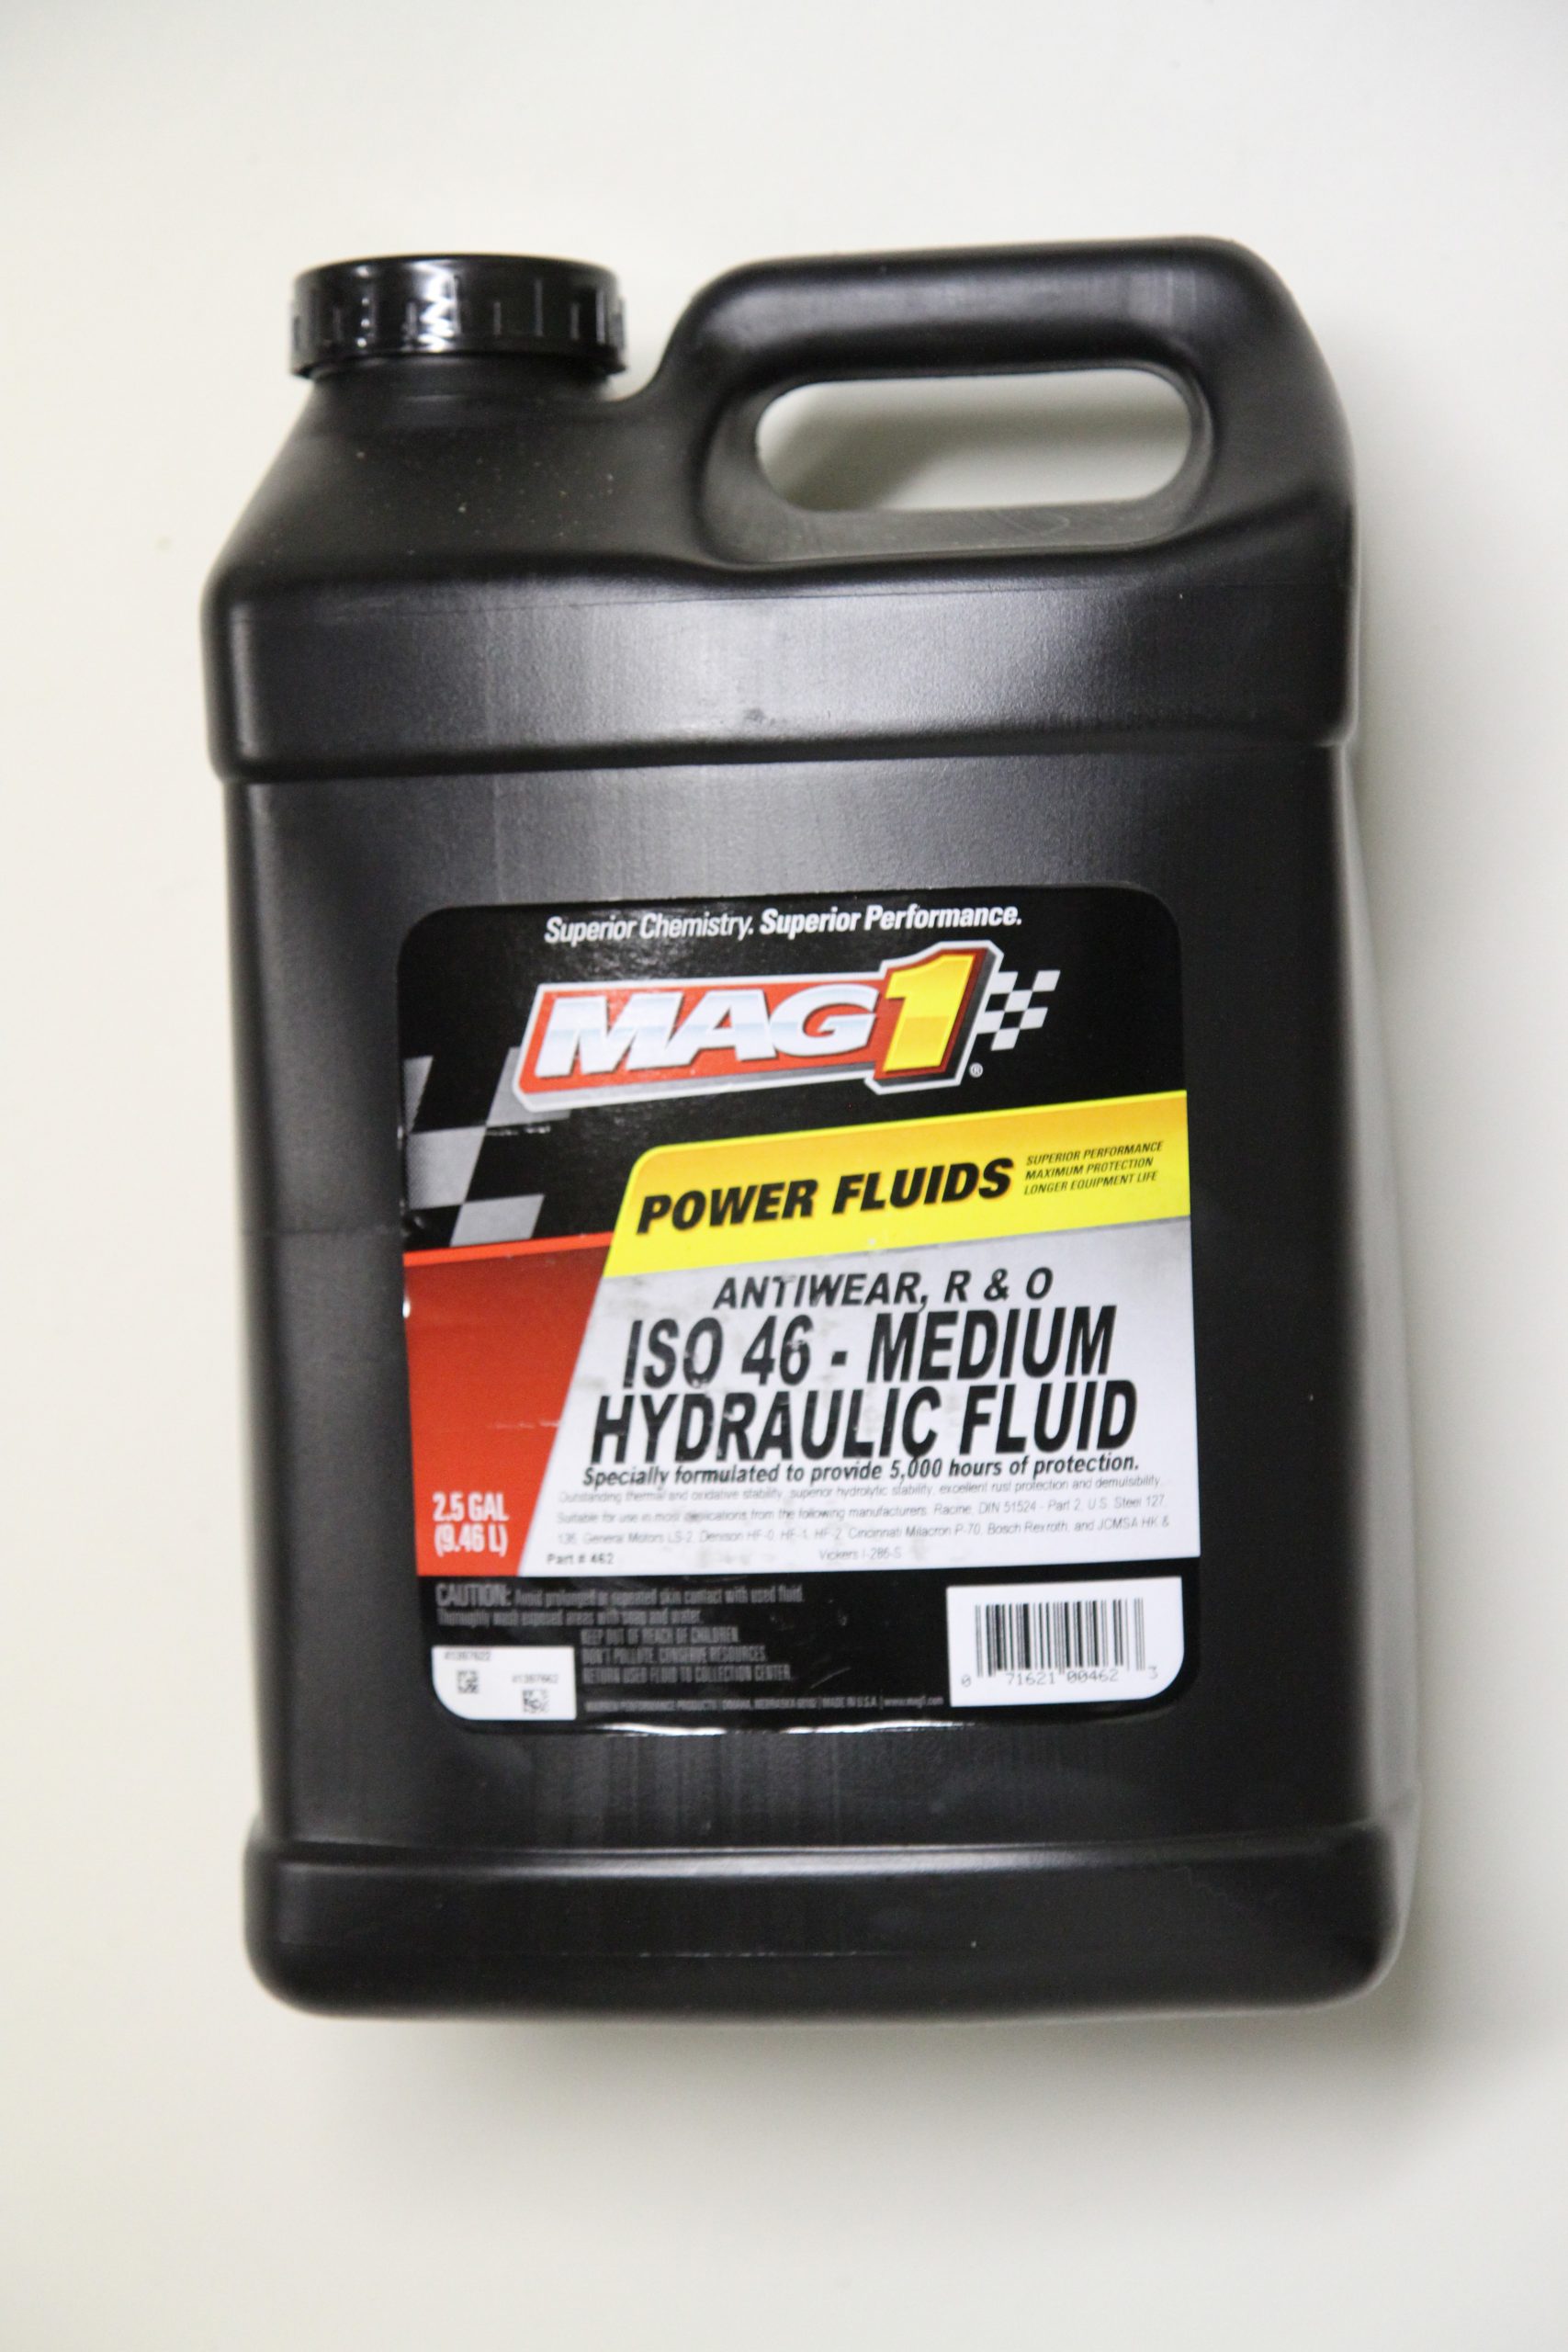 Bottle of Mag1 Power Fluid